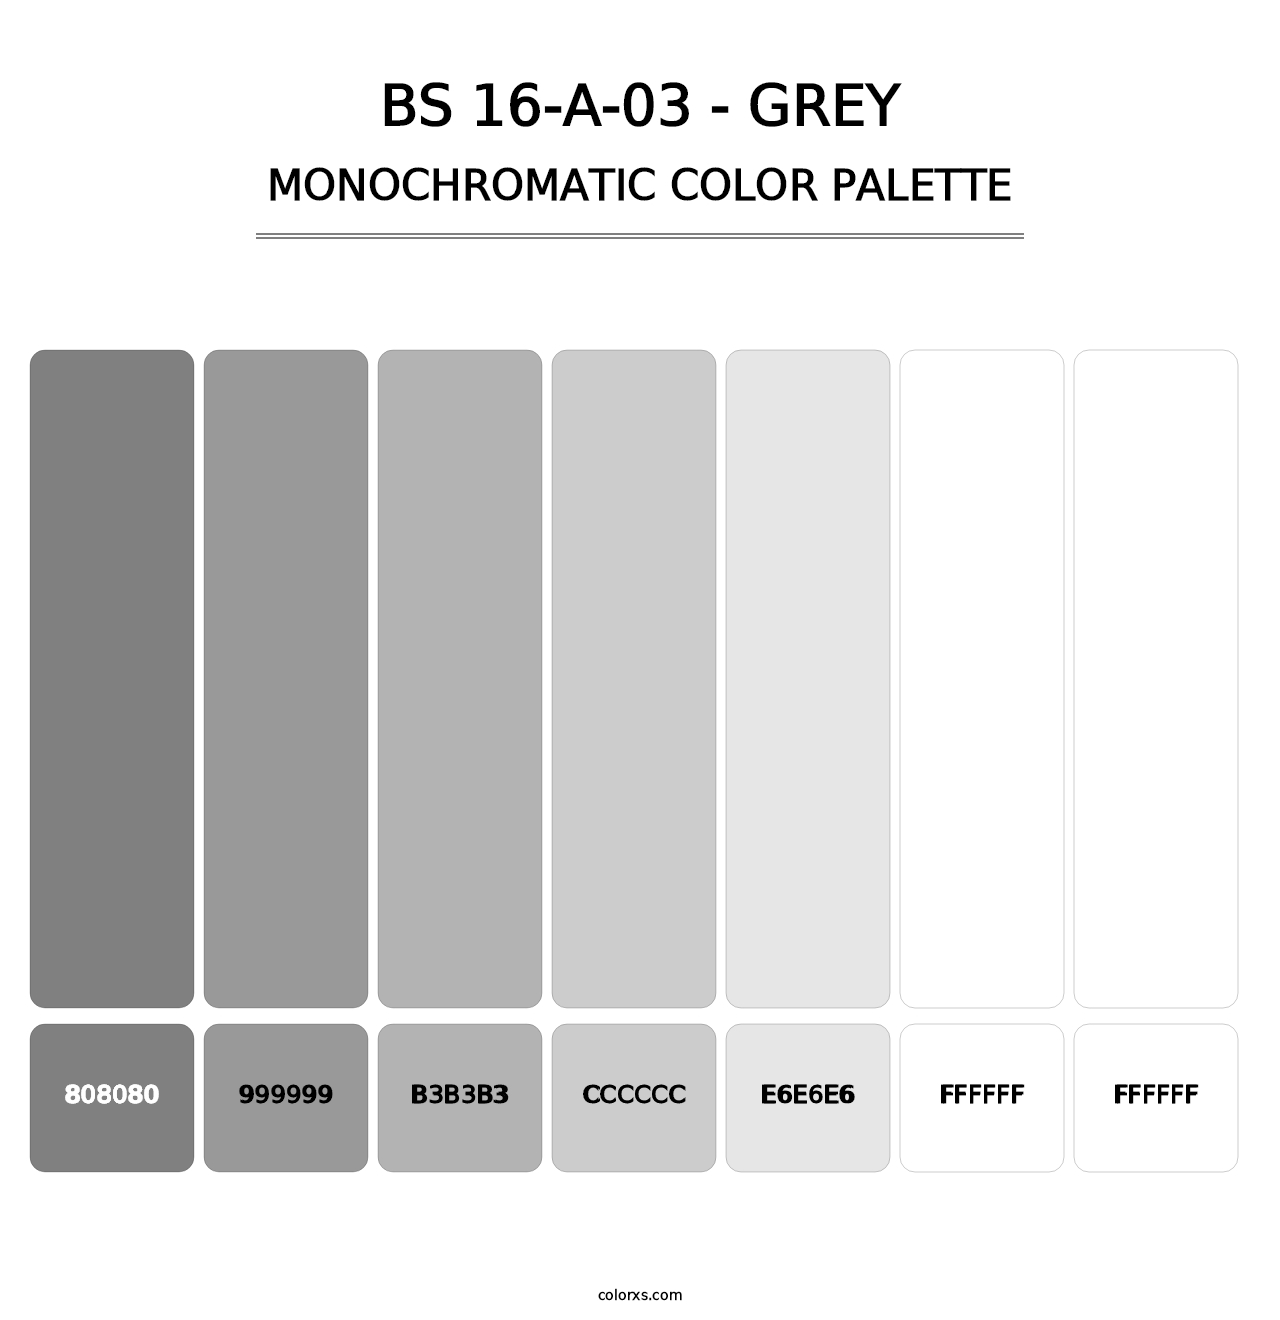 BS 16-A-03 - Grey - Monochromatic Color Palette